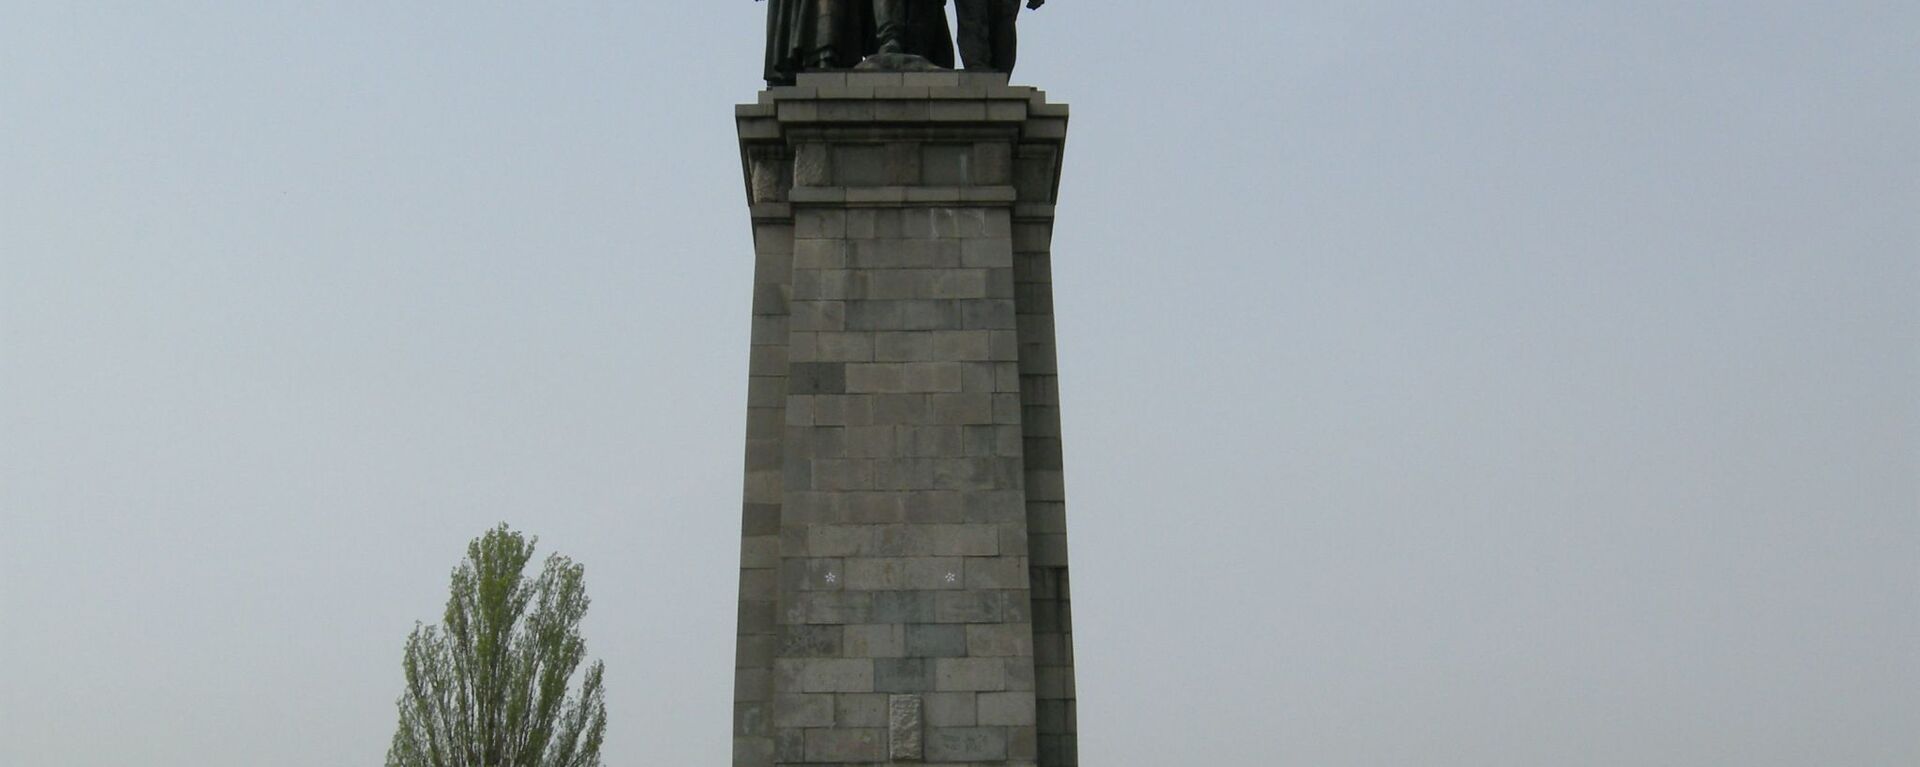 Споменик совјетској армији у бугарској Софији - Sputnik Србија, 1920, 21.05.2020